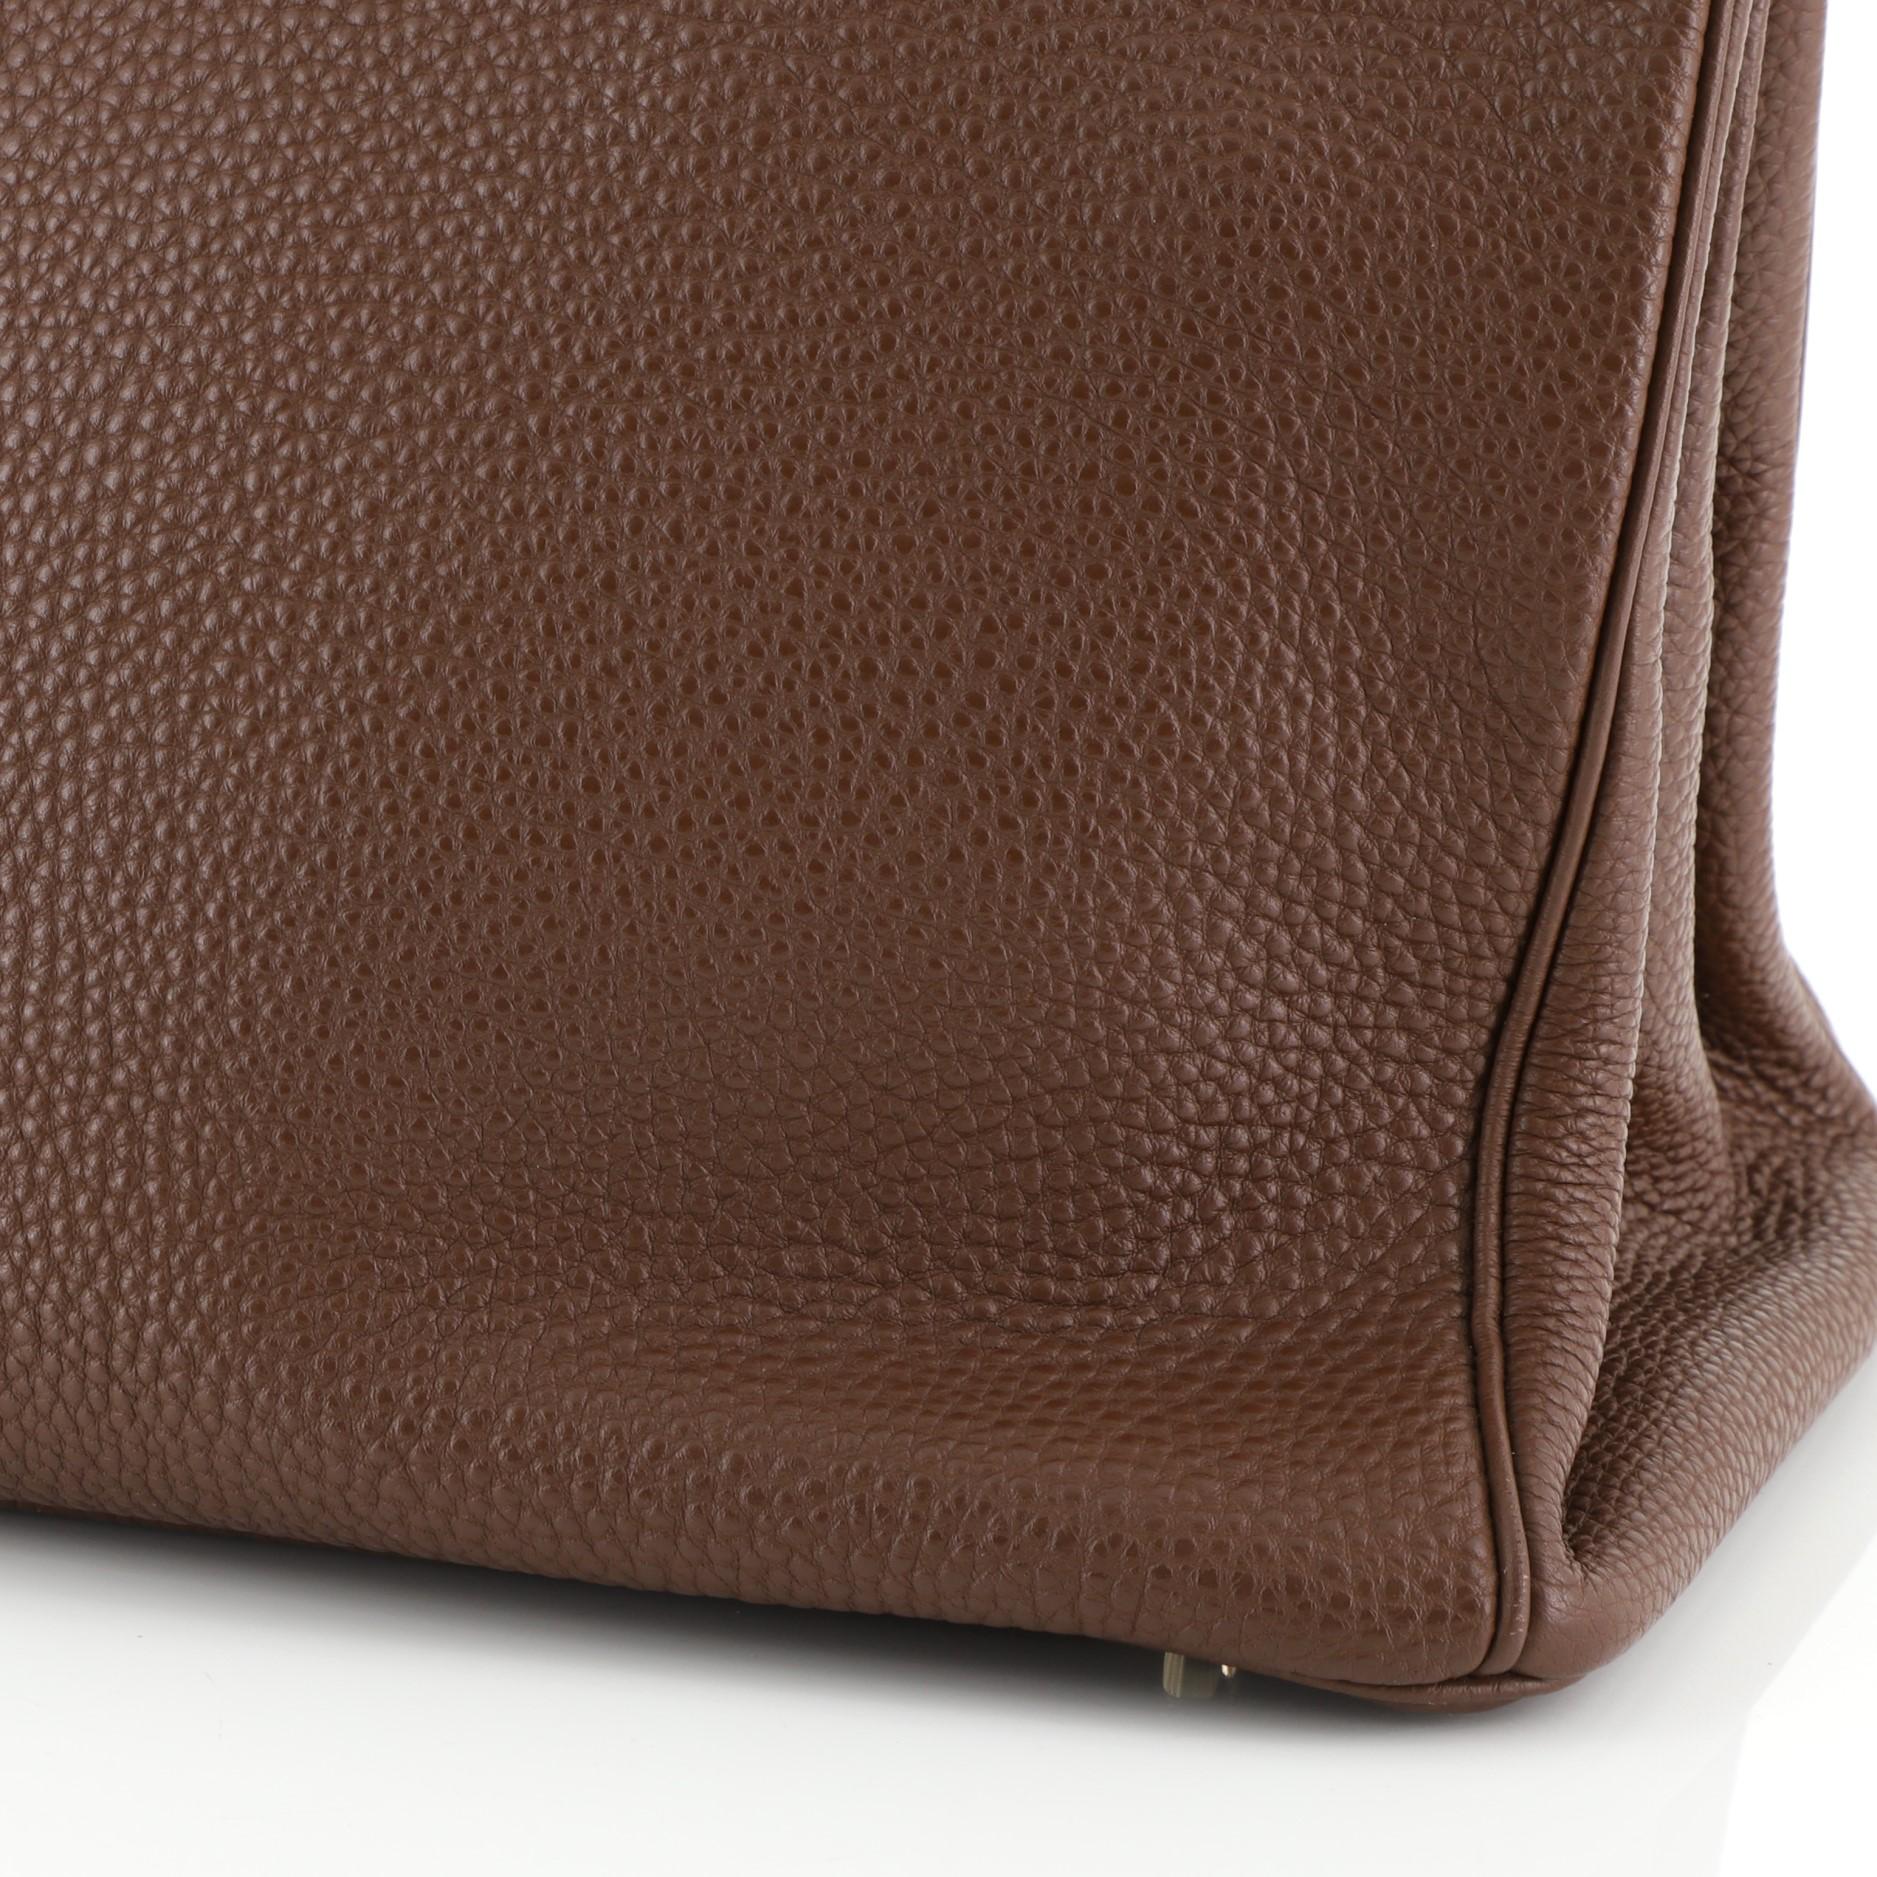 Hermes Birkin Handbag Brulee Togo with Gold Hardware 35 2